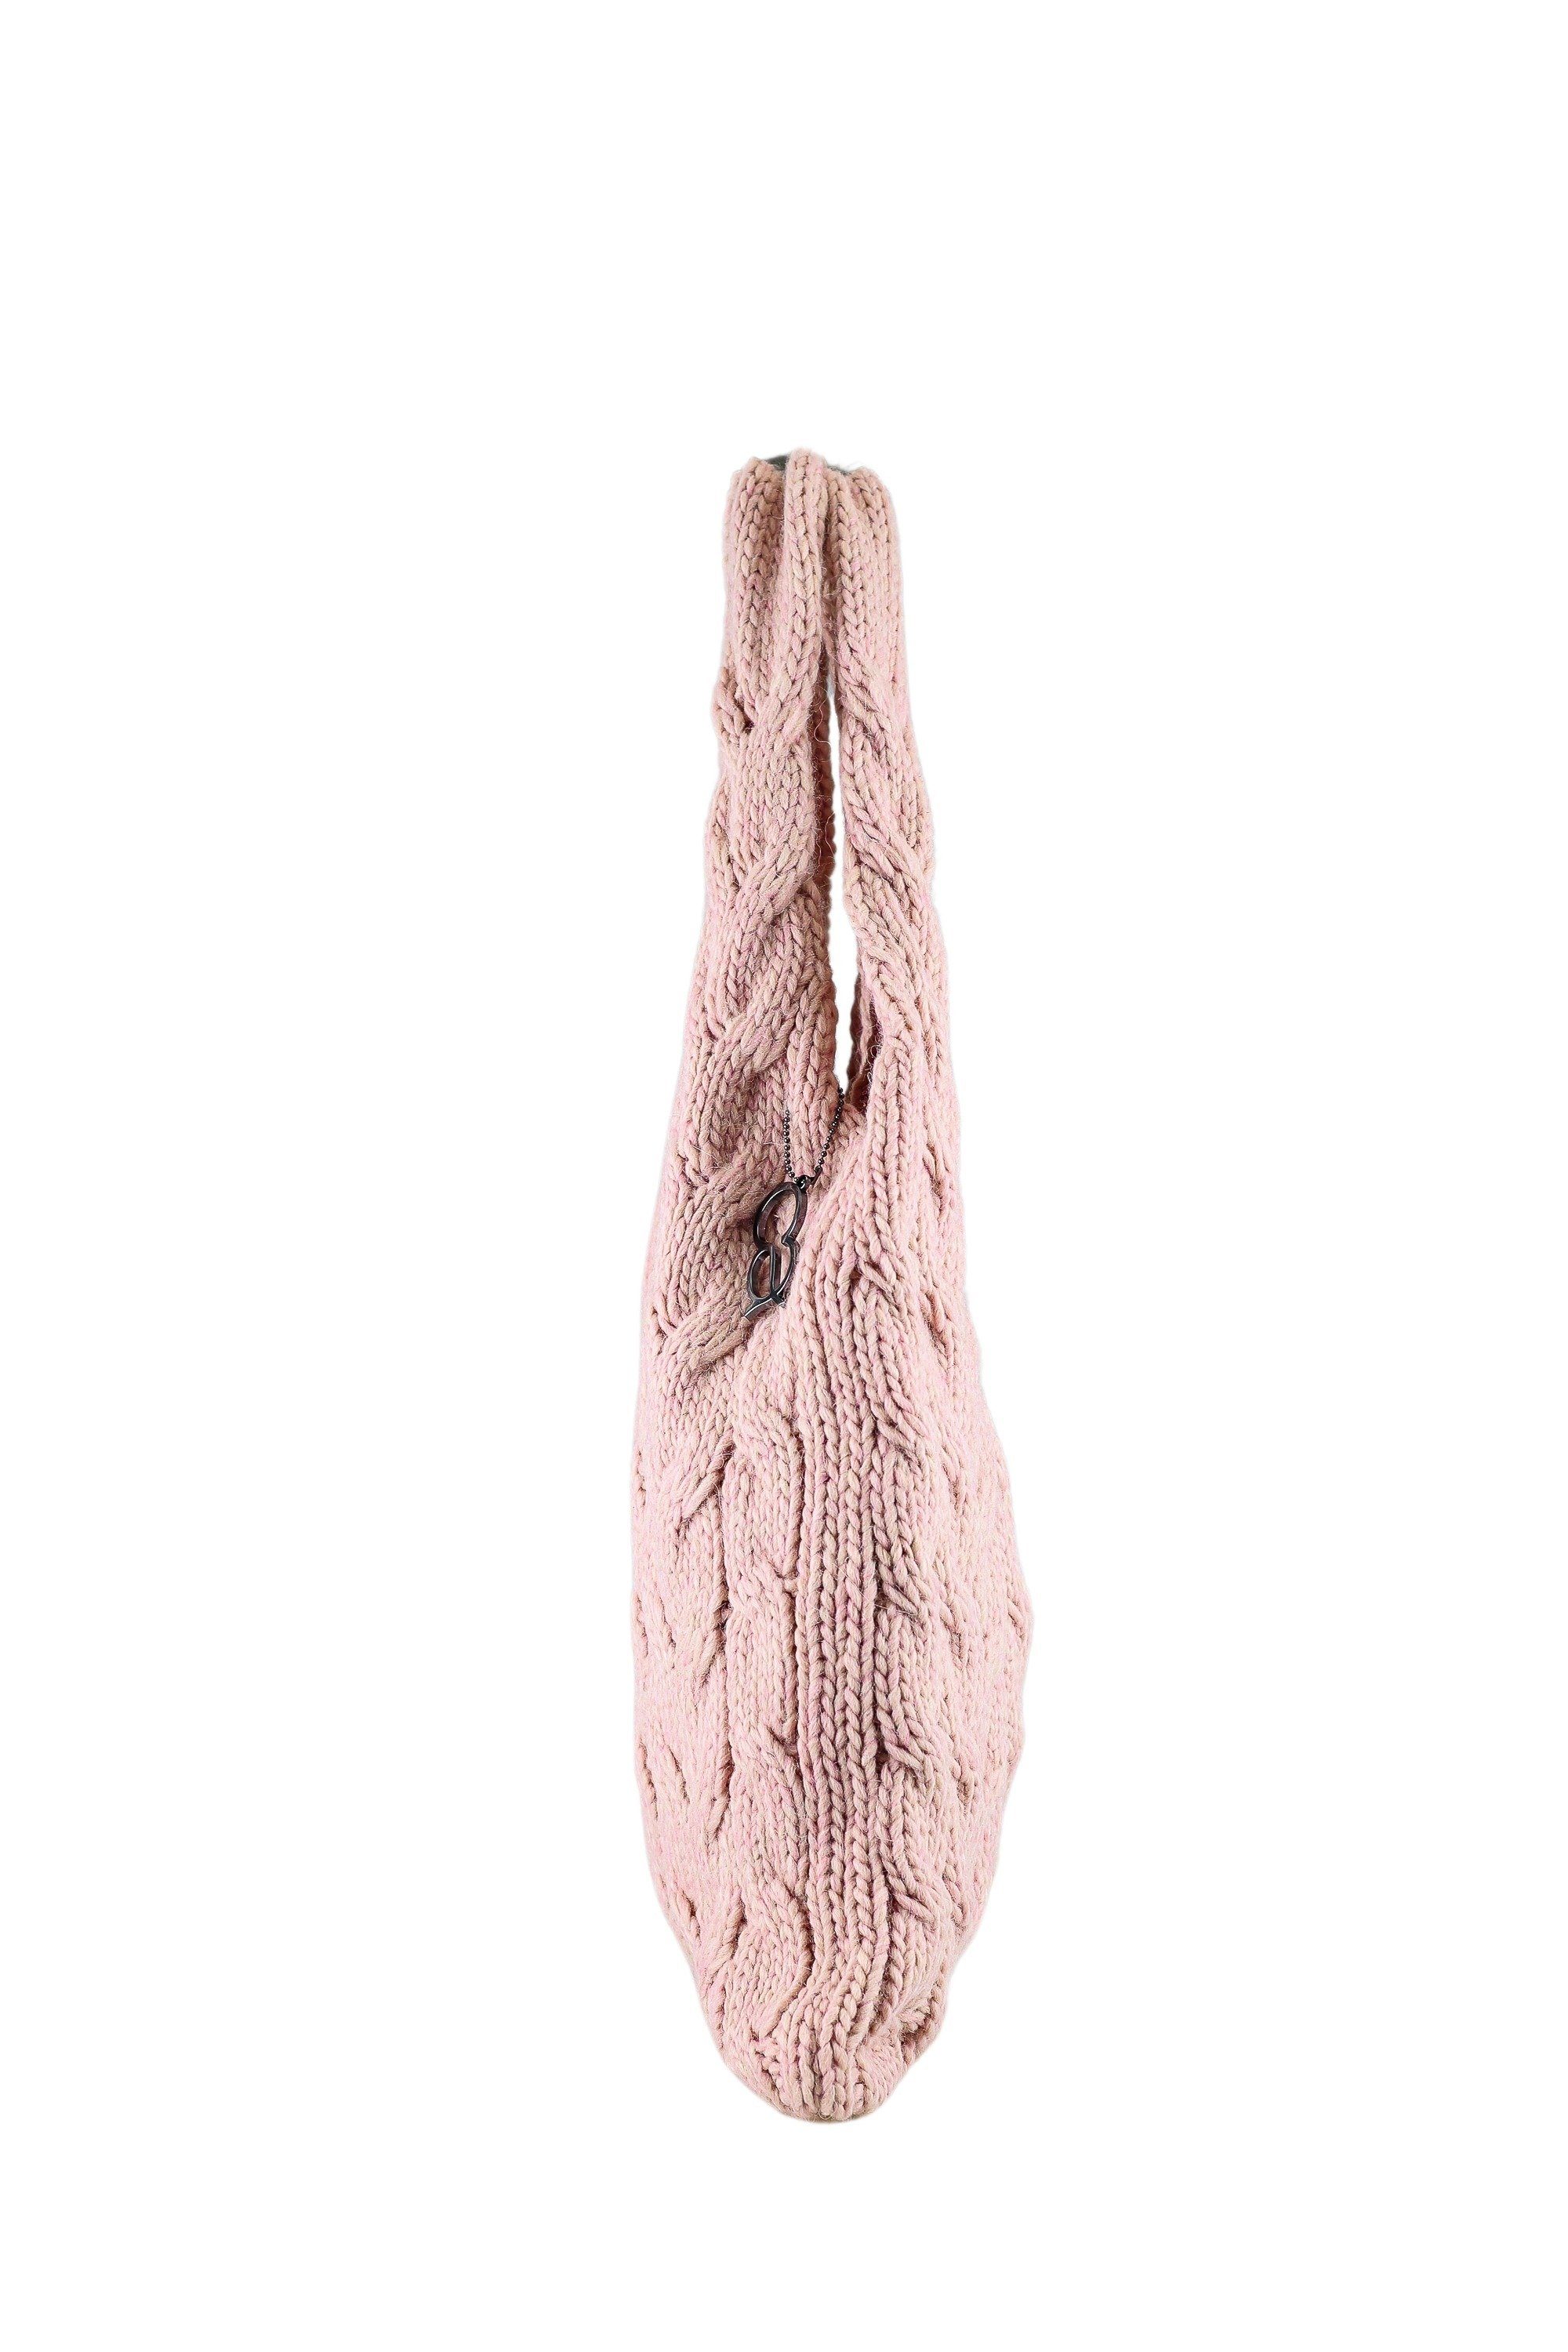 Schultertasche Stoff rosa weichem Wollflecht, ALESSANDRO COLLEZIONE aus